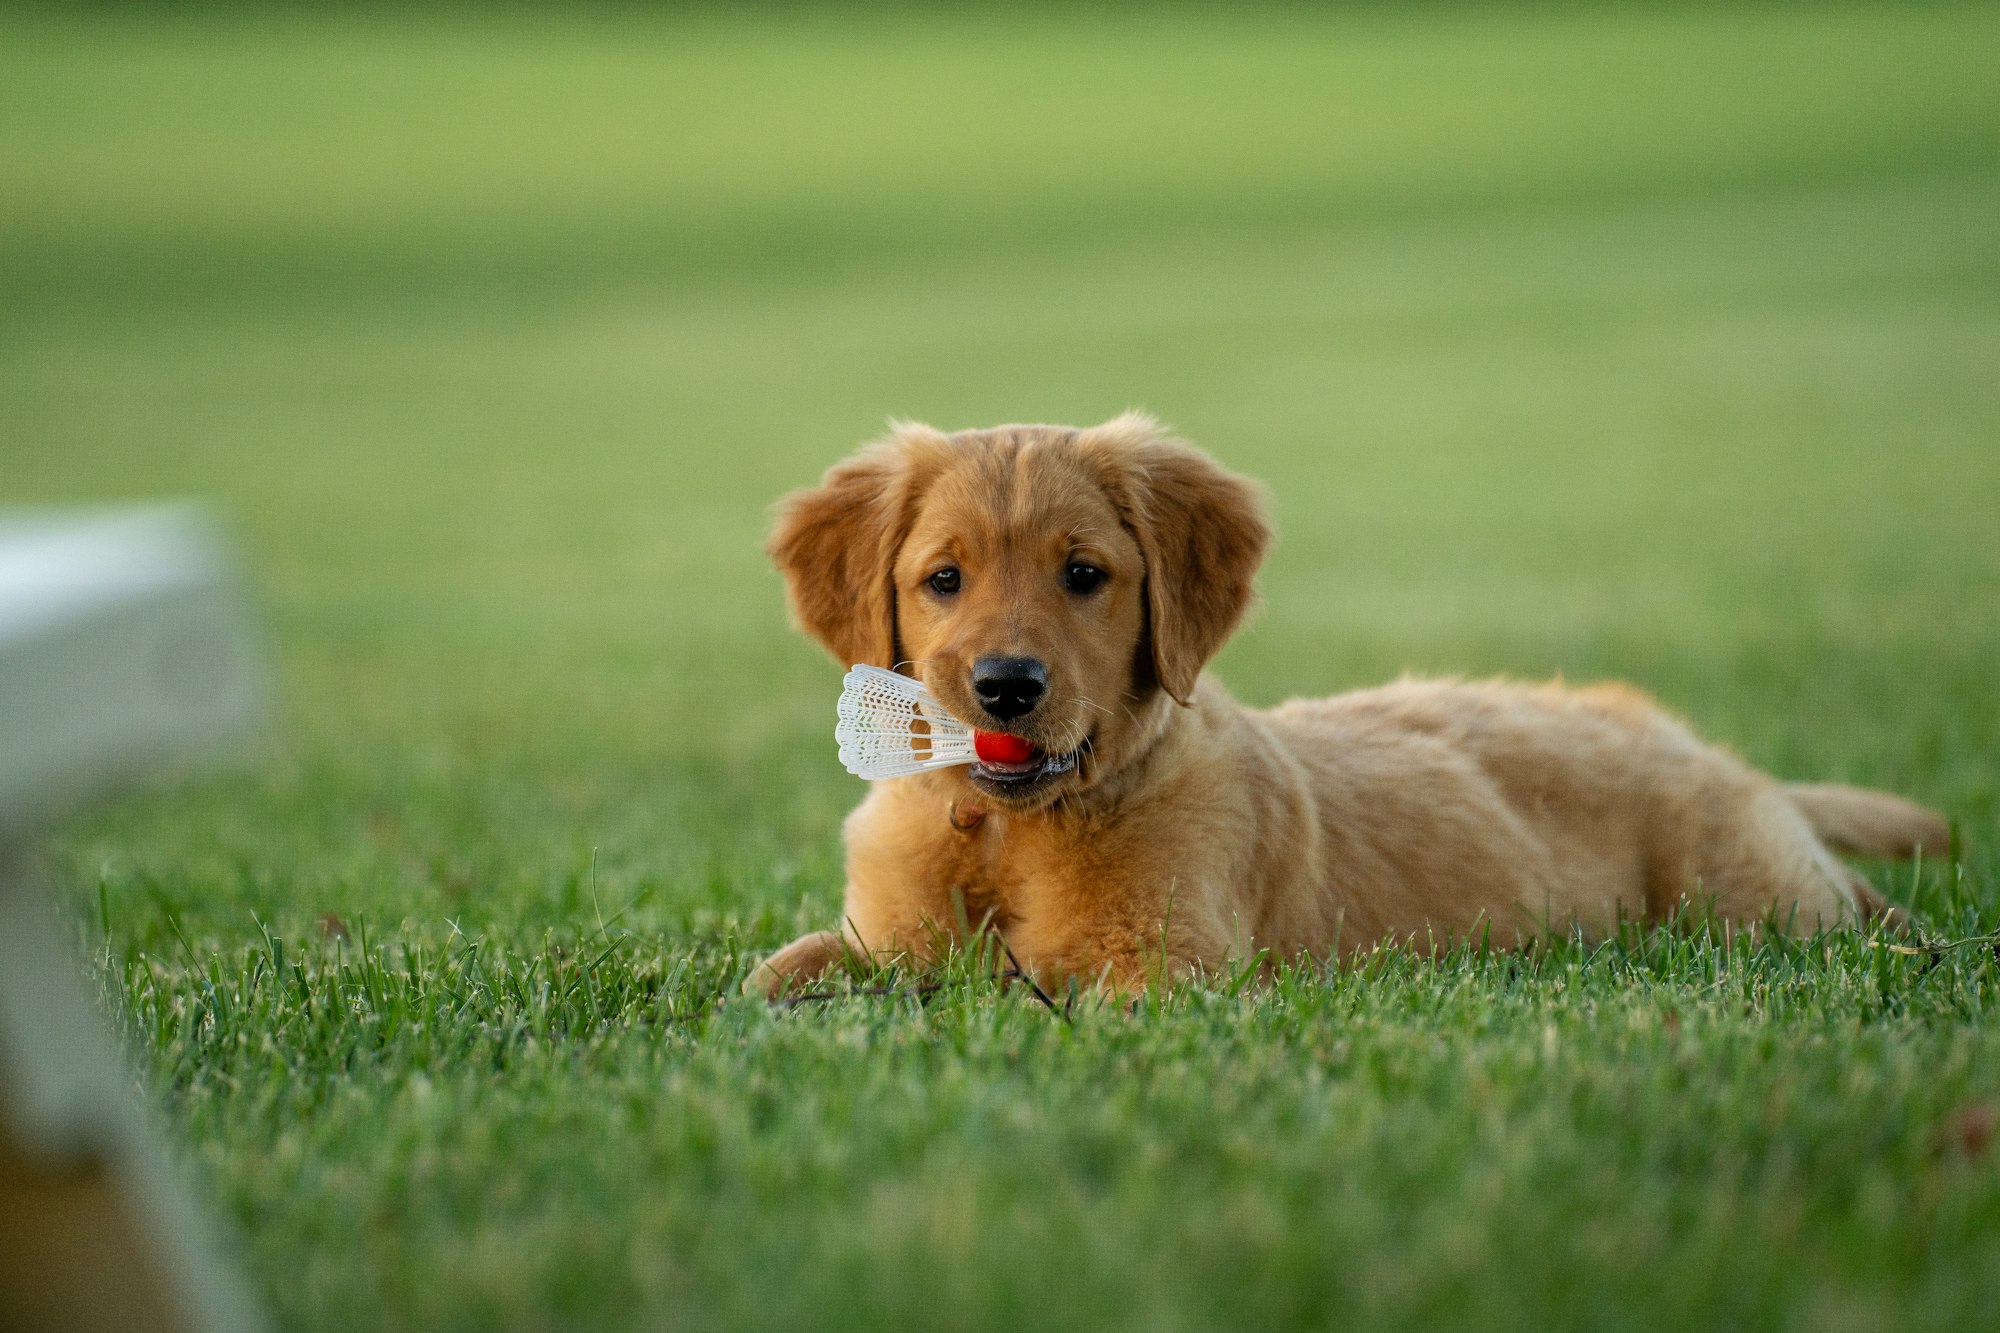 golden puppy enjoying the grass